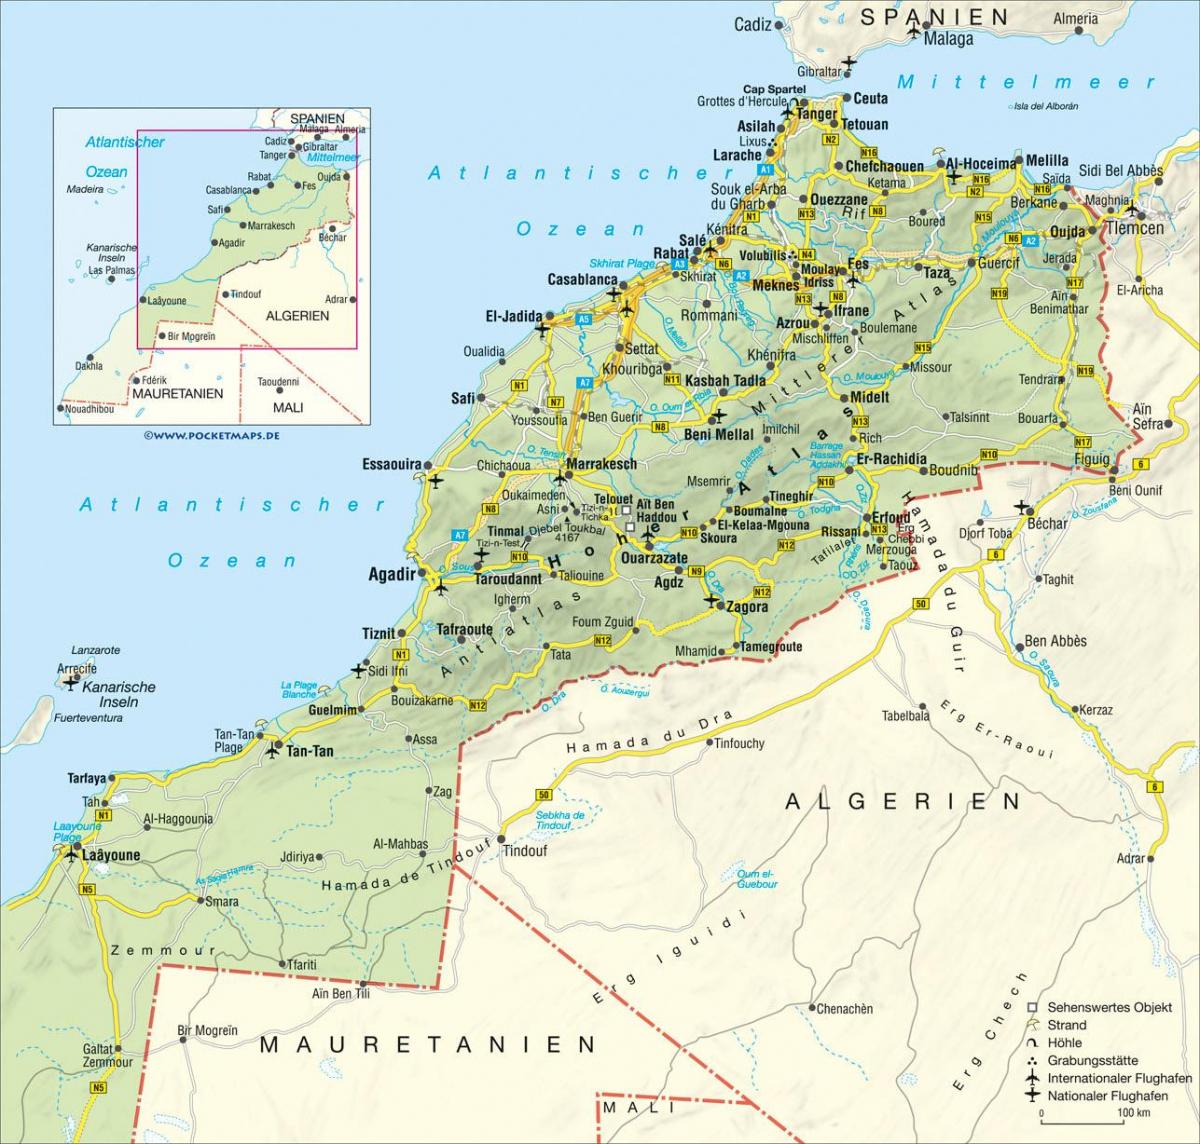 Große Karte von Marokko